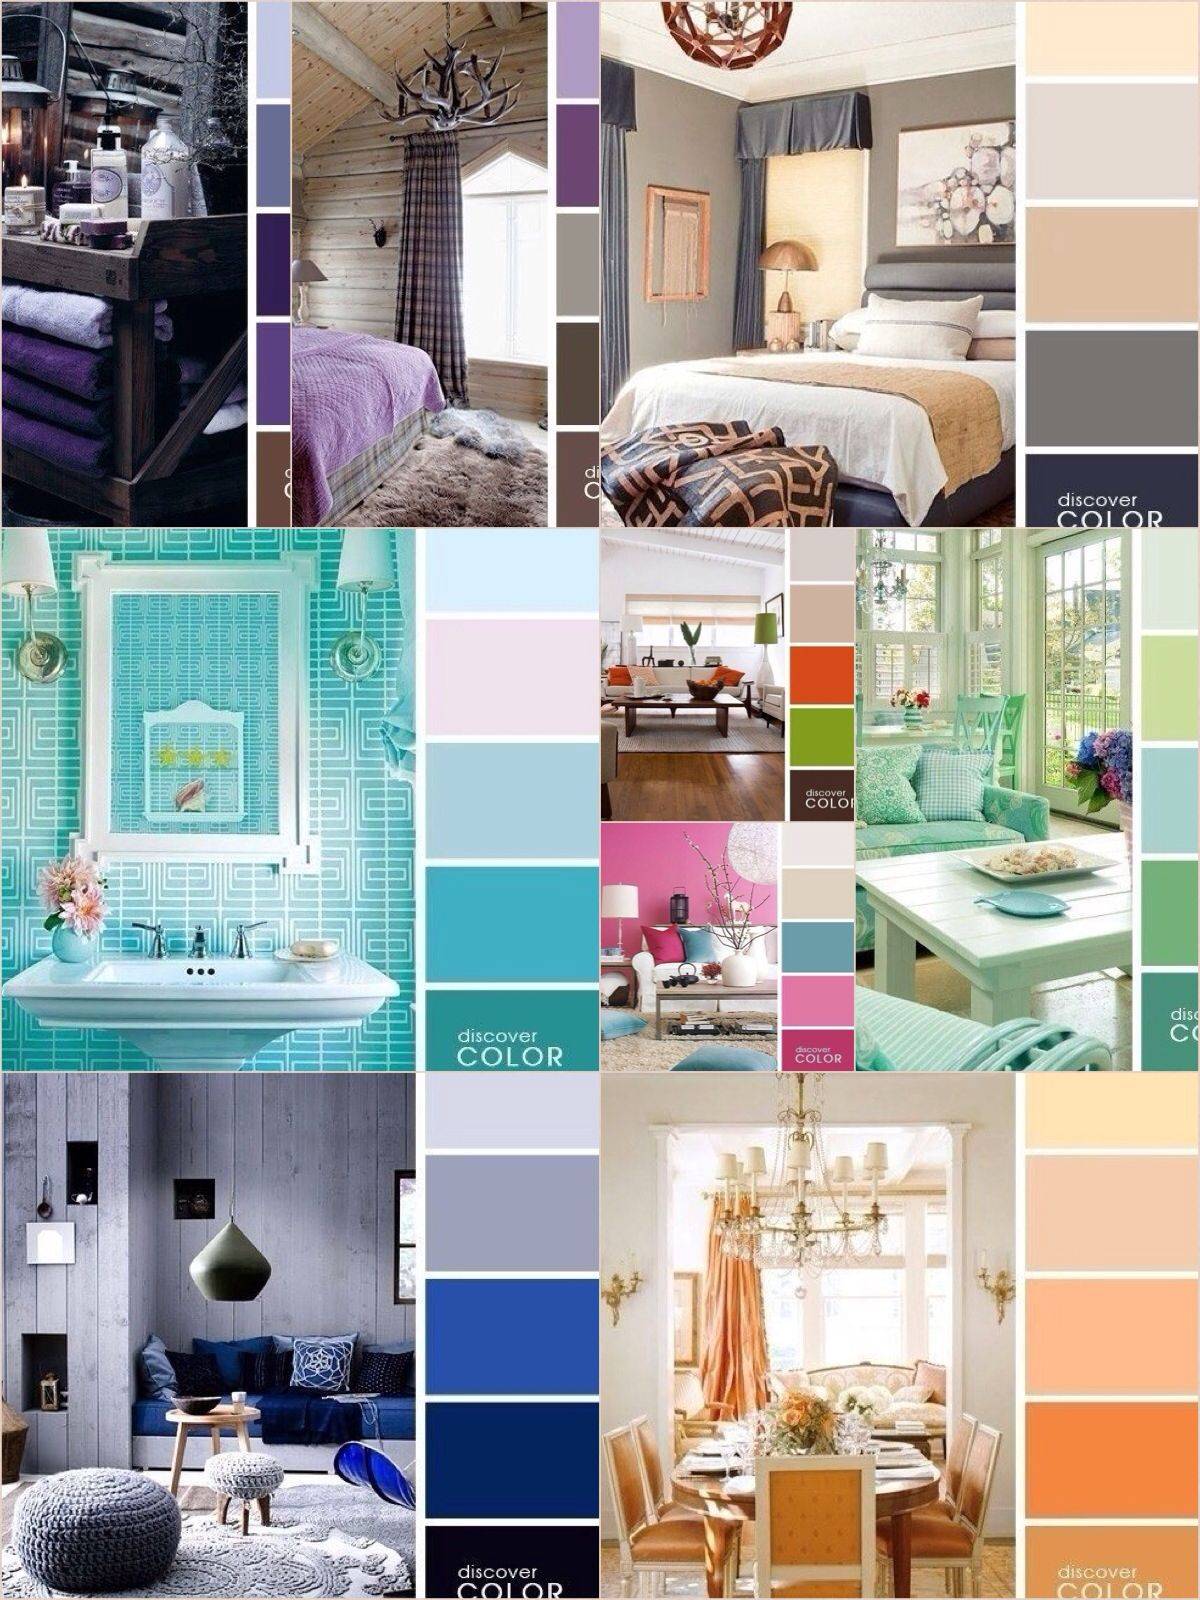 Сочетание цветов в интерьере (202 фото): таблицы и раскладки с палитрой для дизайнеров. как сочетаются цветовые гаммы пола и потолка, стен и мебели?